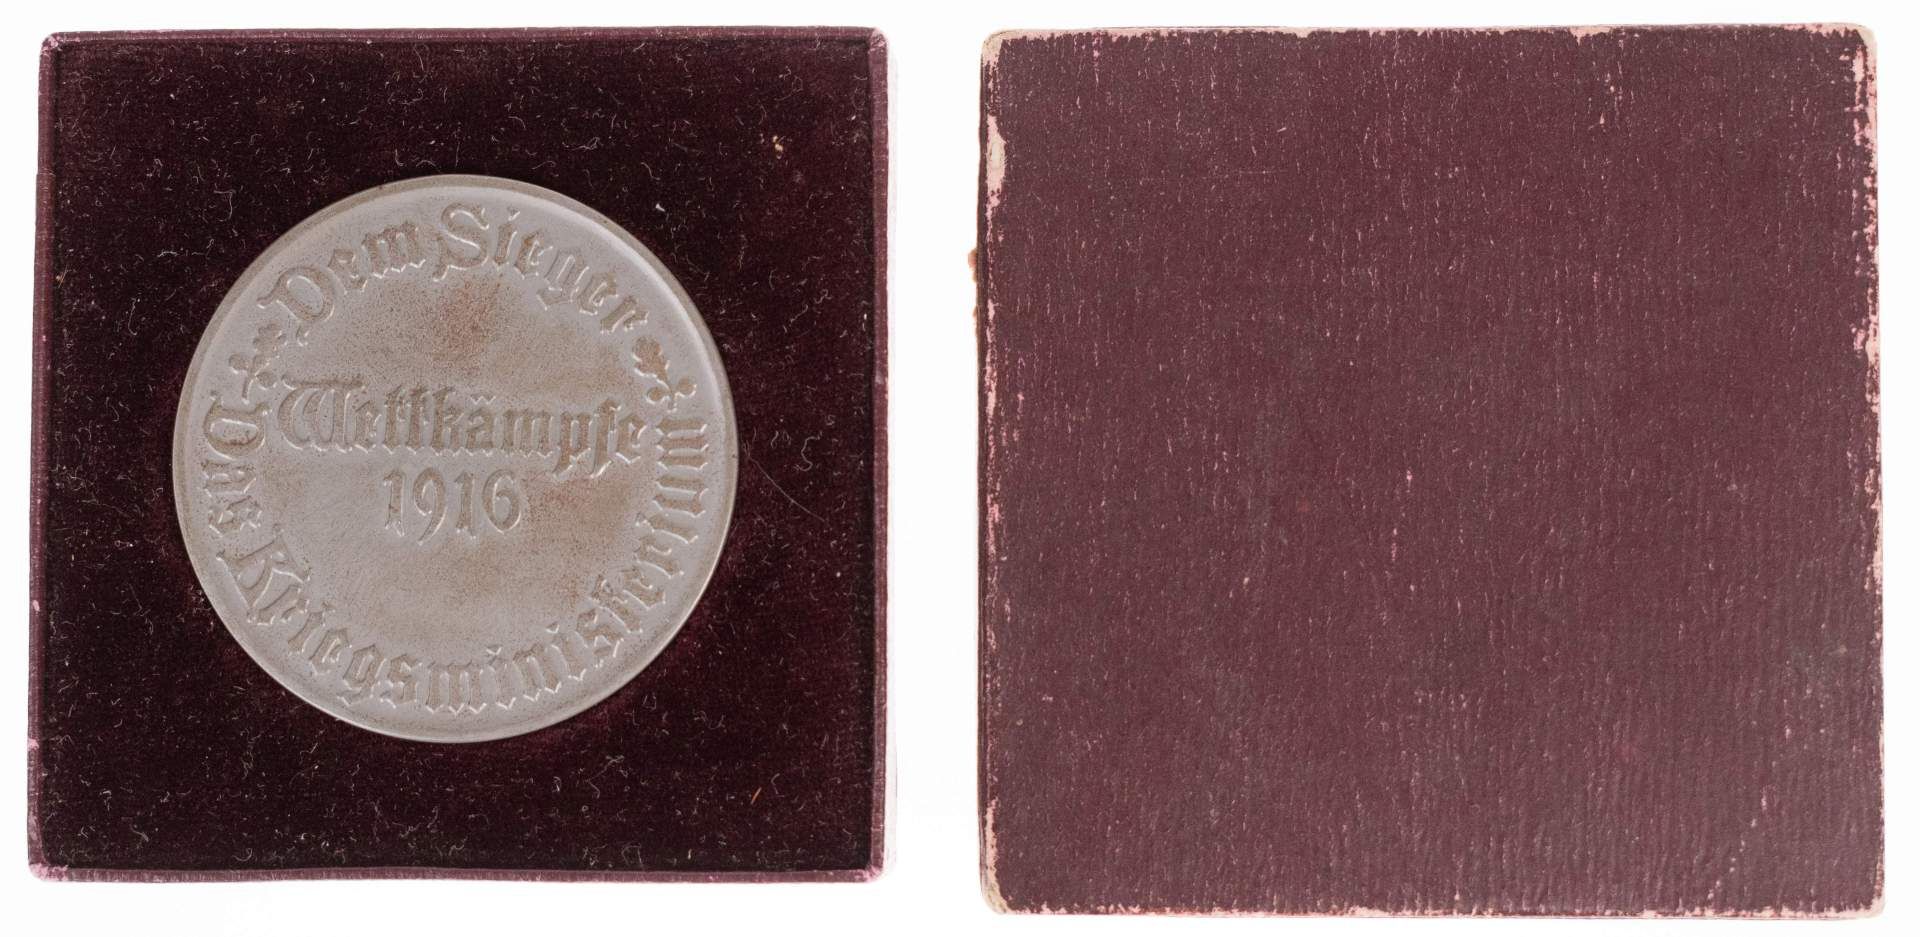 Siegermedaille, 1916, unsigniert, Av: Krieger mit Schild und Speer, Rev: Umschrift "Dem Sieger - Das - Bild 2 aus 3